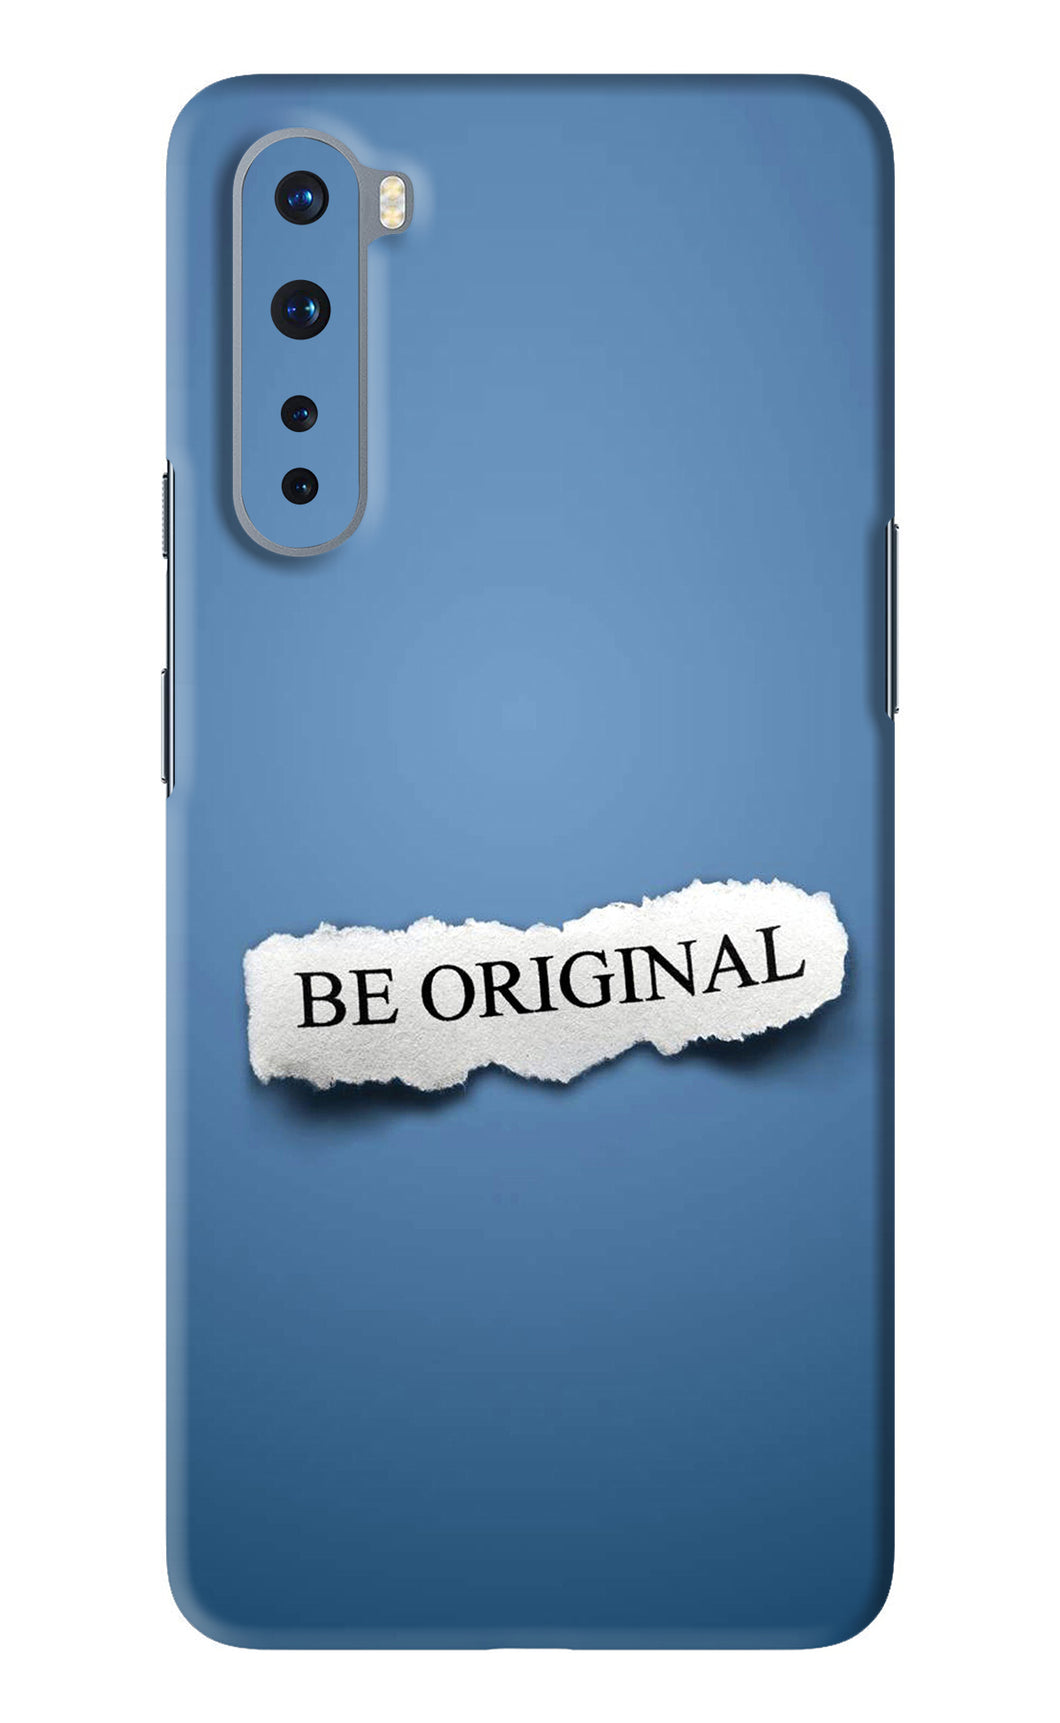 Be Original OnePlus Nord Back Skin Wrap